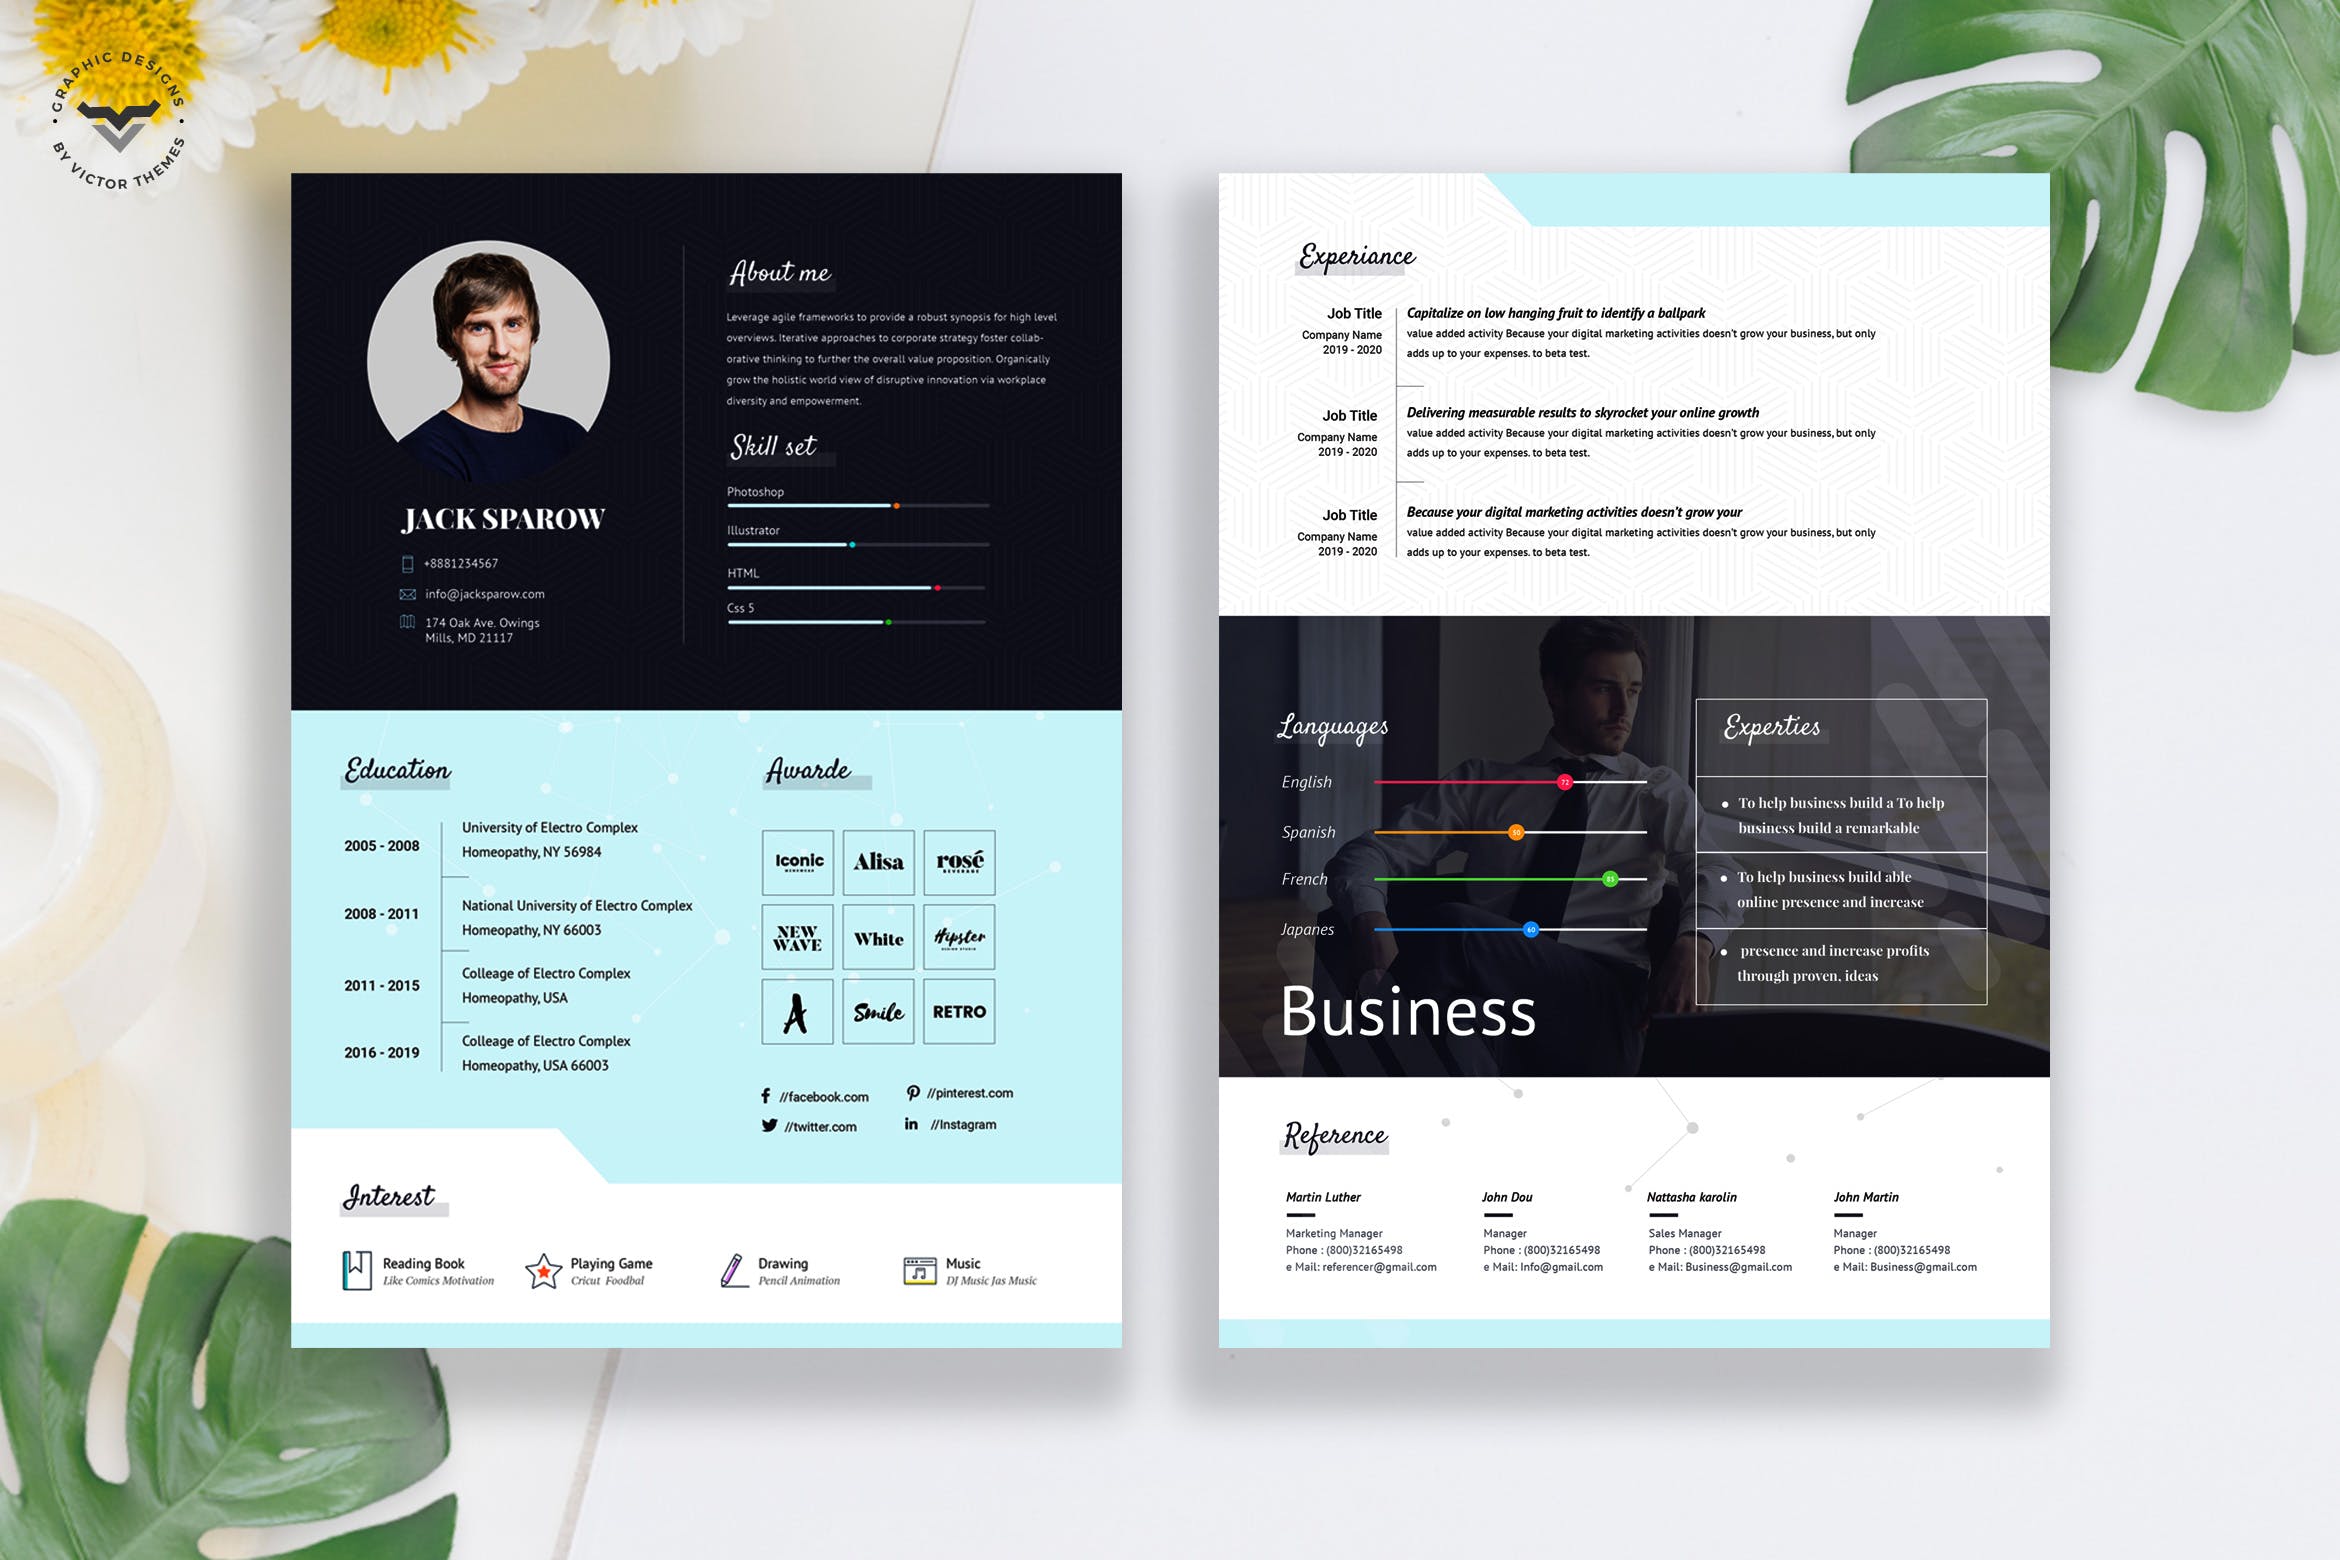 两页式创意设计师CV蚂蚁素材精选简历模板 Creative Business CV Template插图